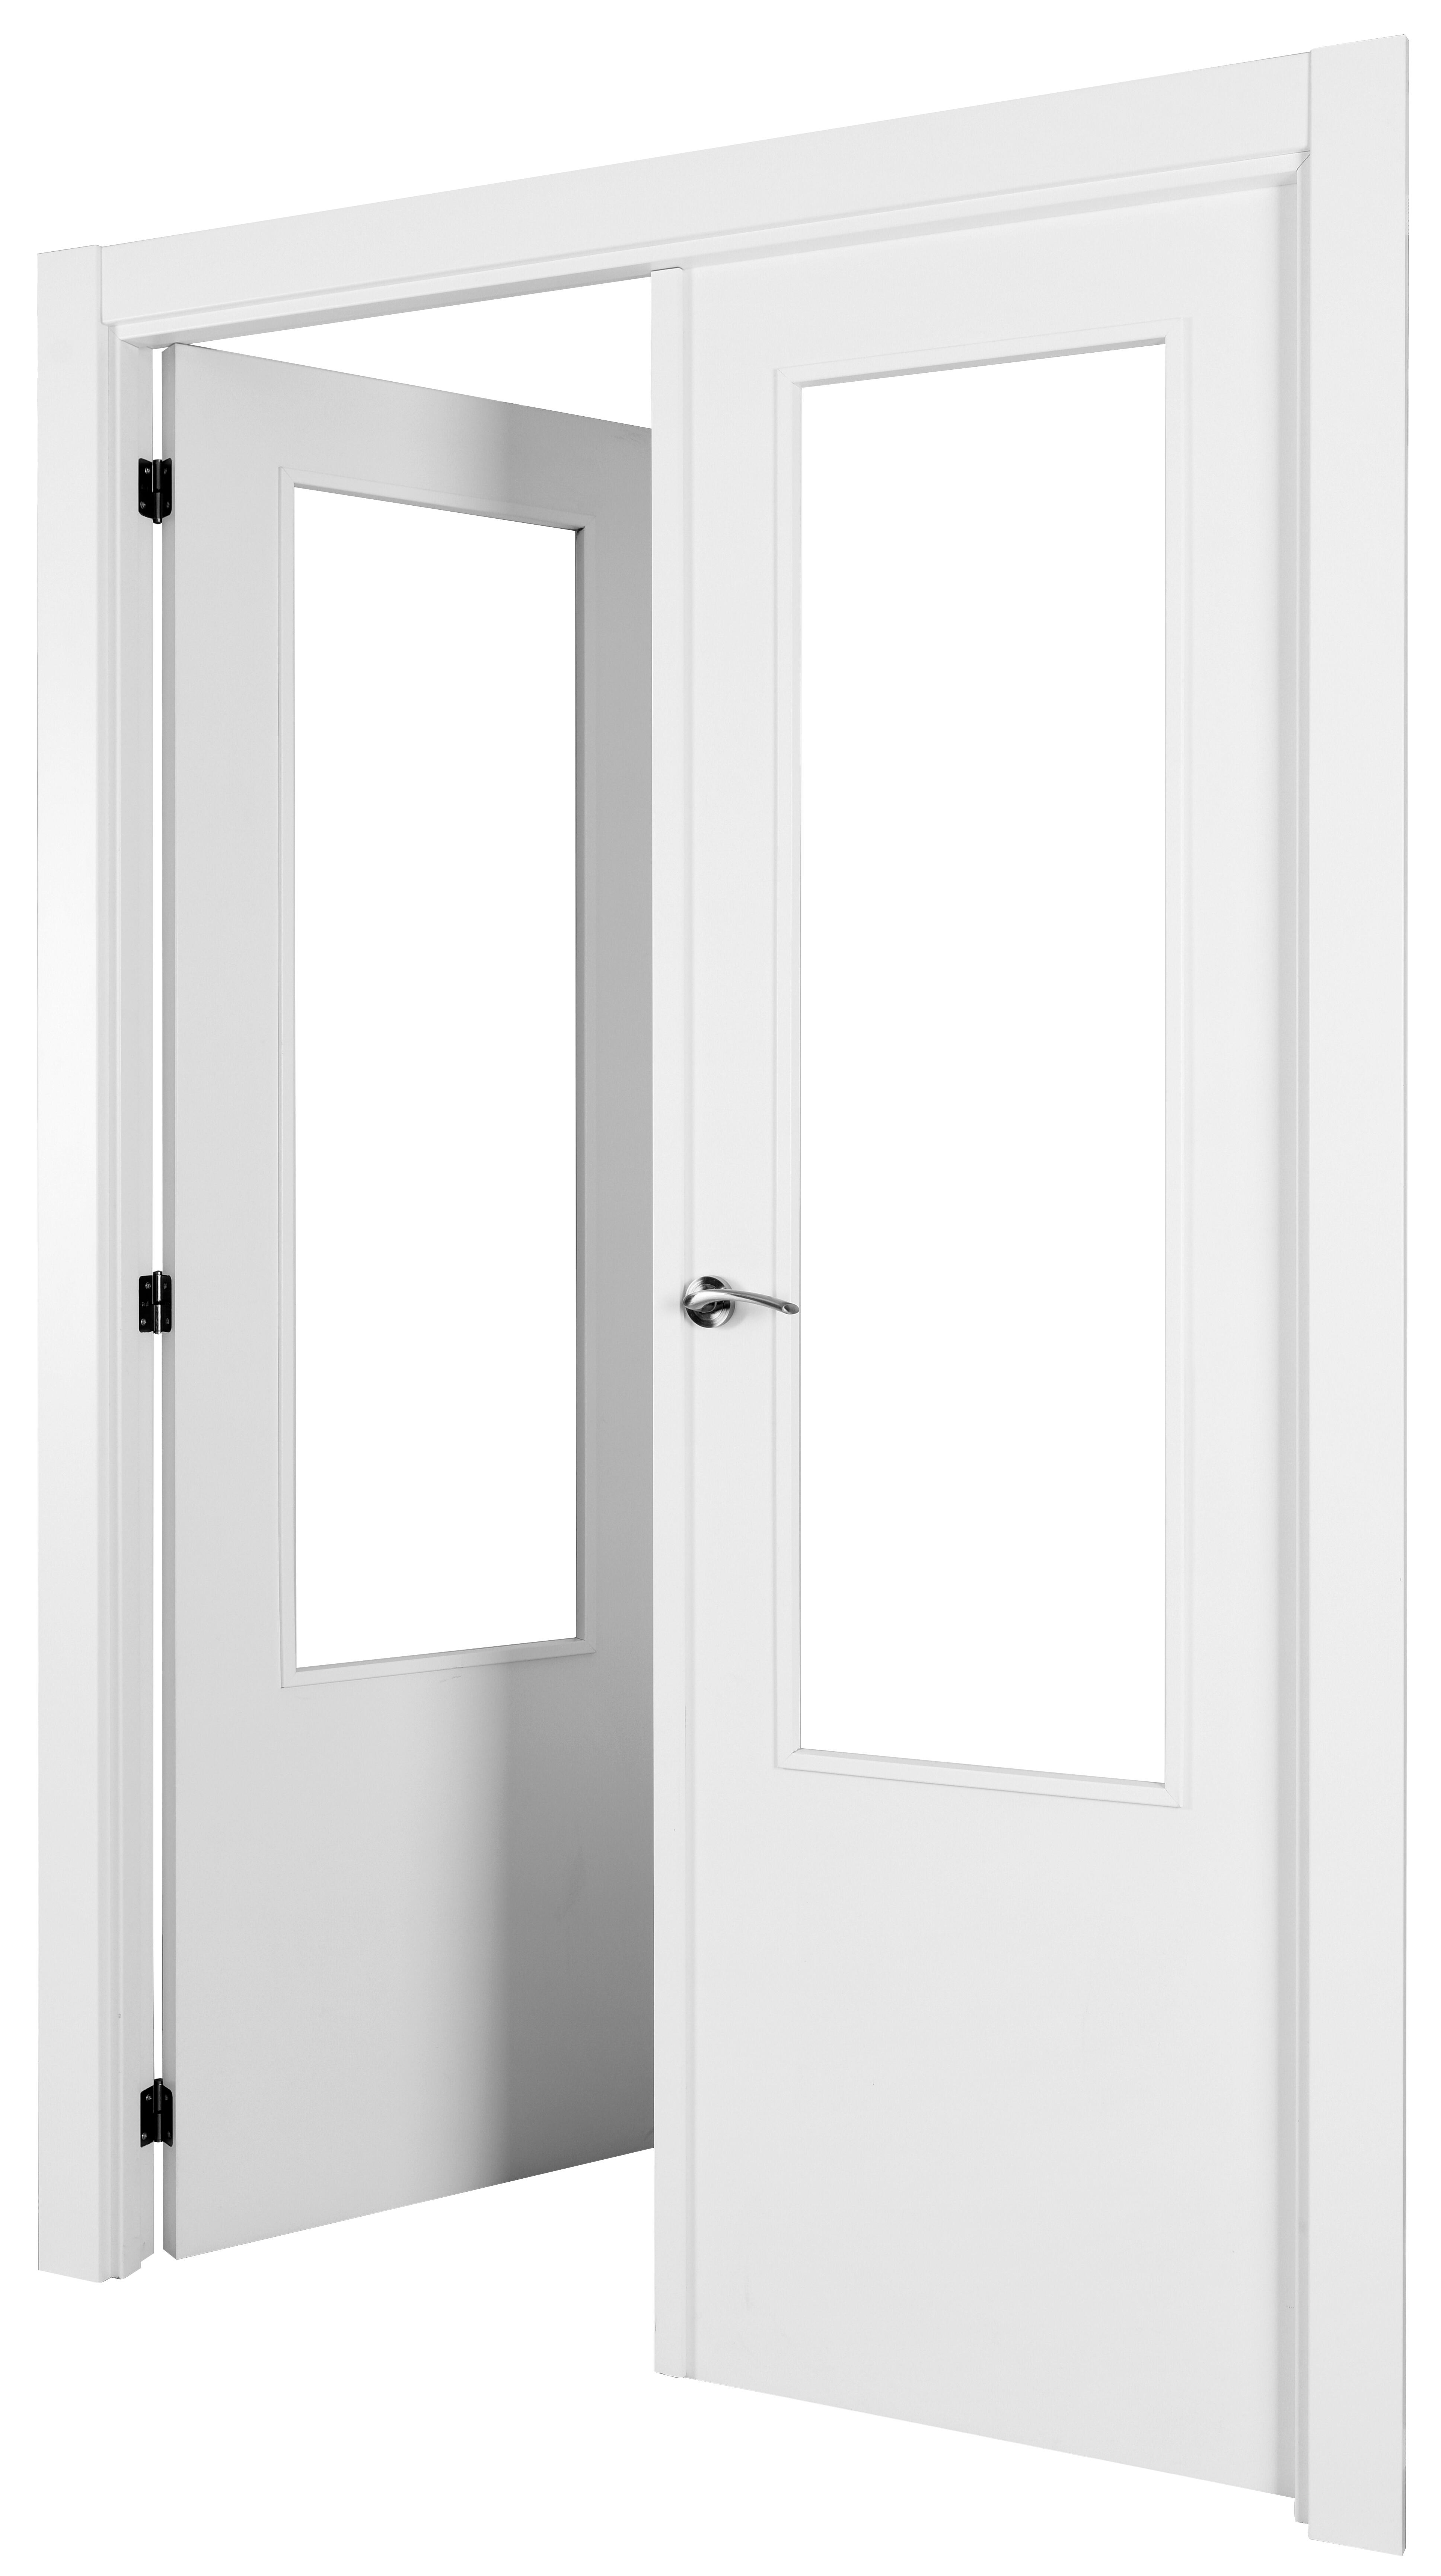 Puerta abatible lyon blanca aero blanco izquierda con cristal de 110x30 y 145cm